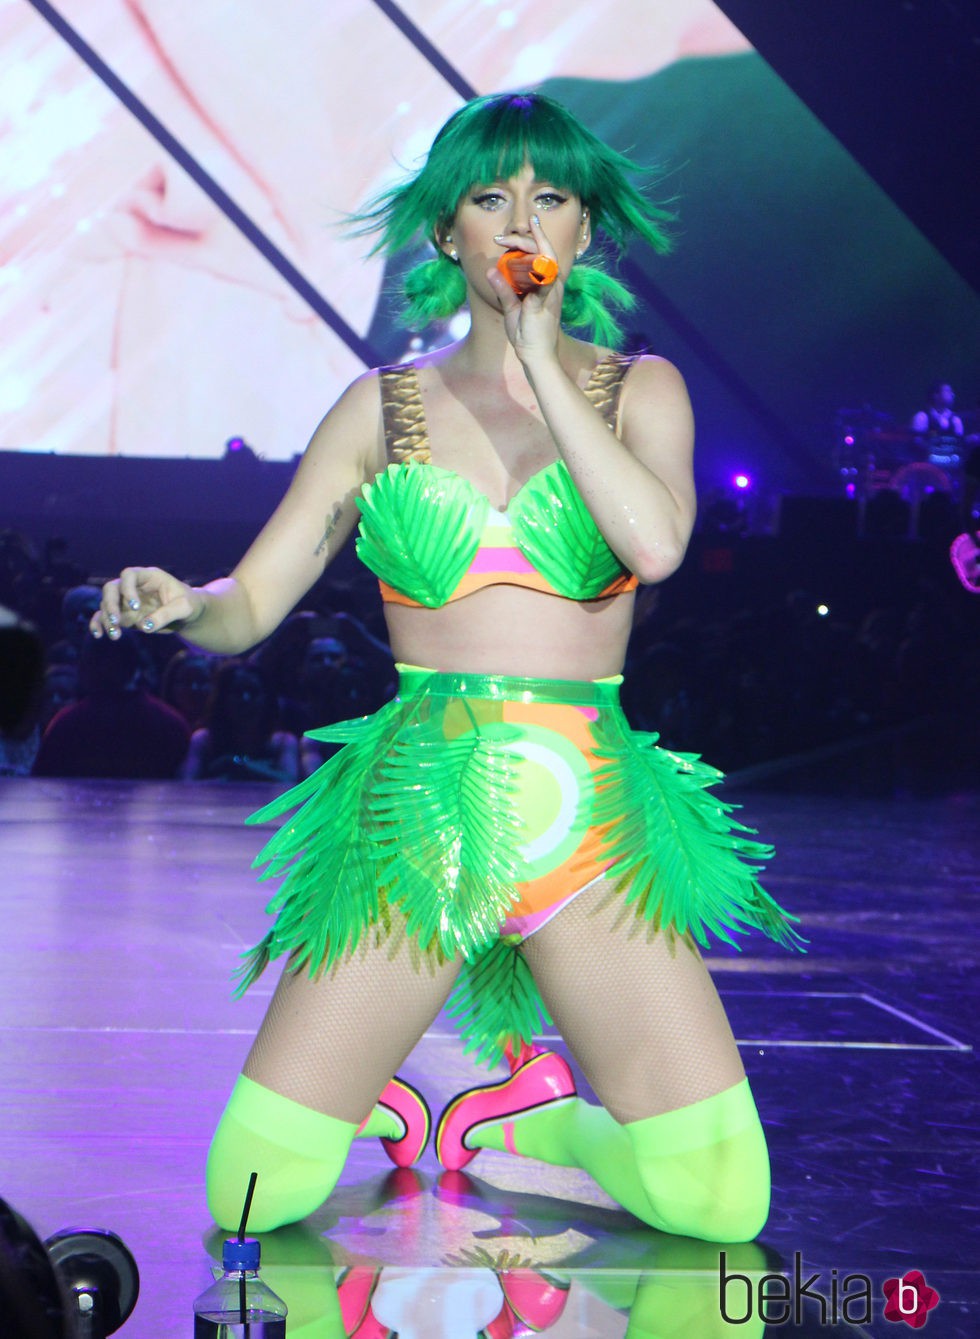 Katy Perry y el traje de palmeras